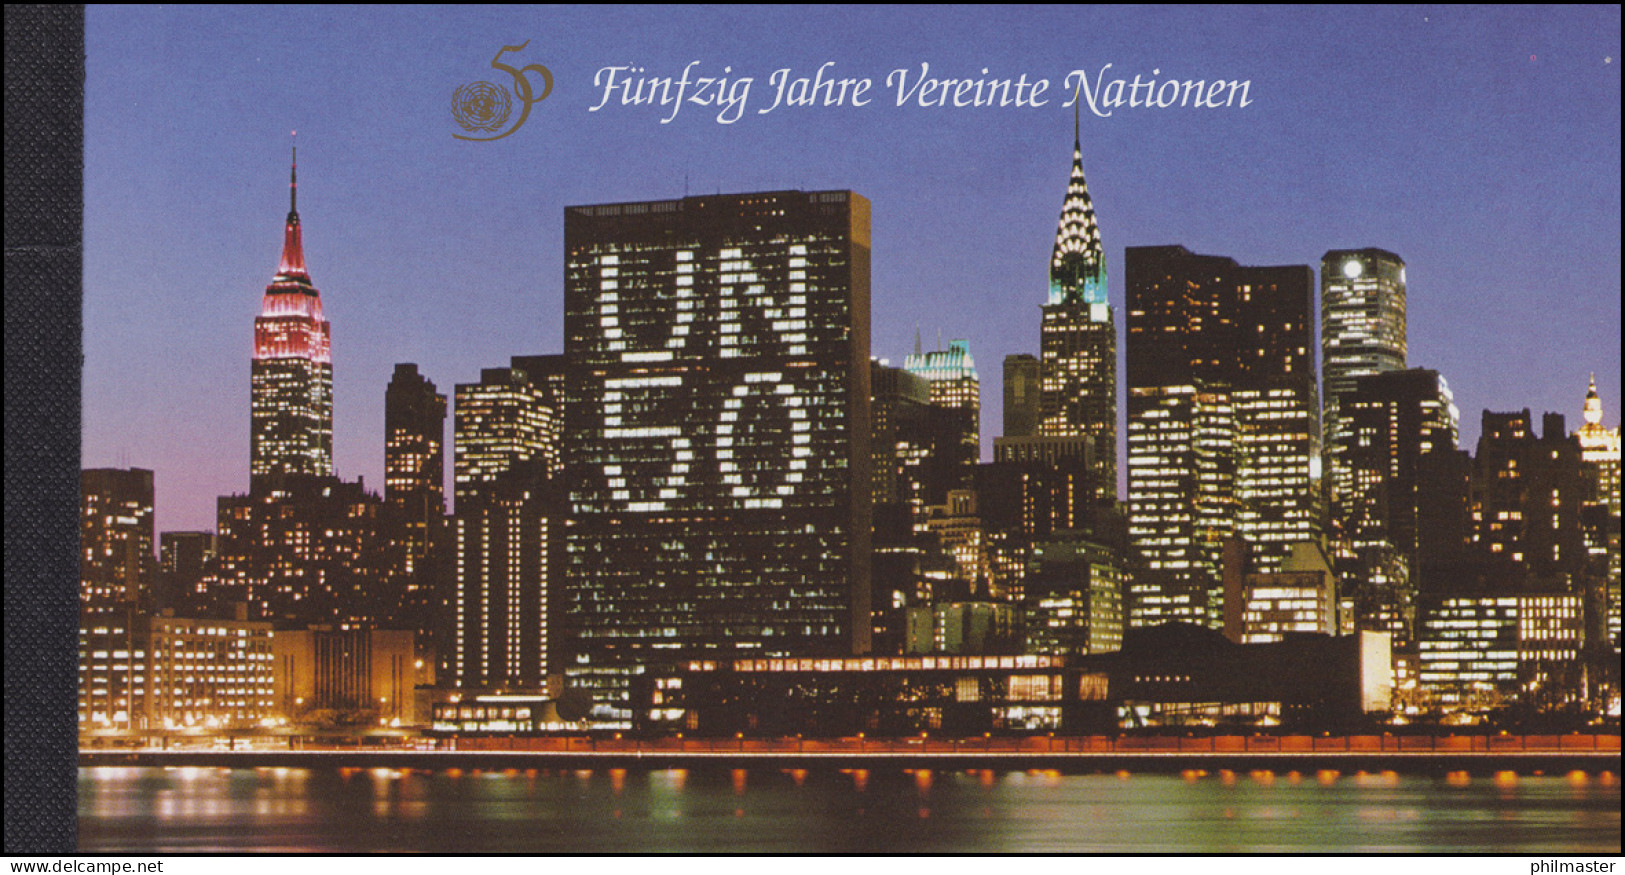 UNO Wien: Markenheftchen 1 Fünfzig Jahre Vereinte Nationen 1995, ESSt - Markenheftchen